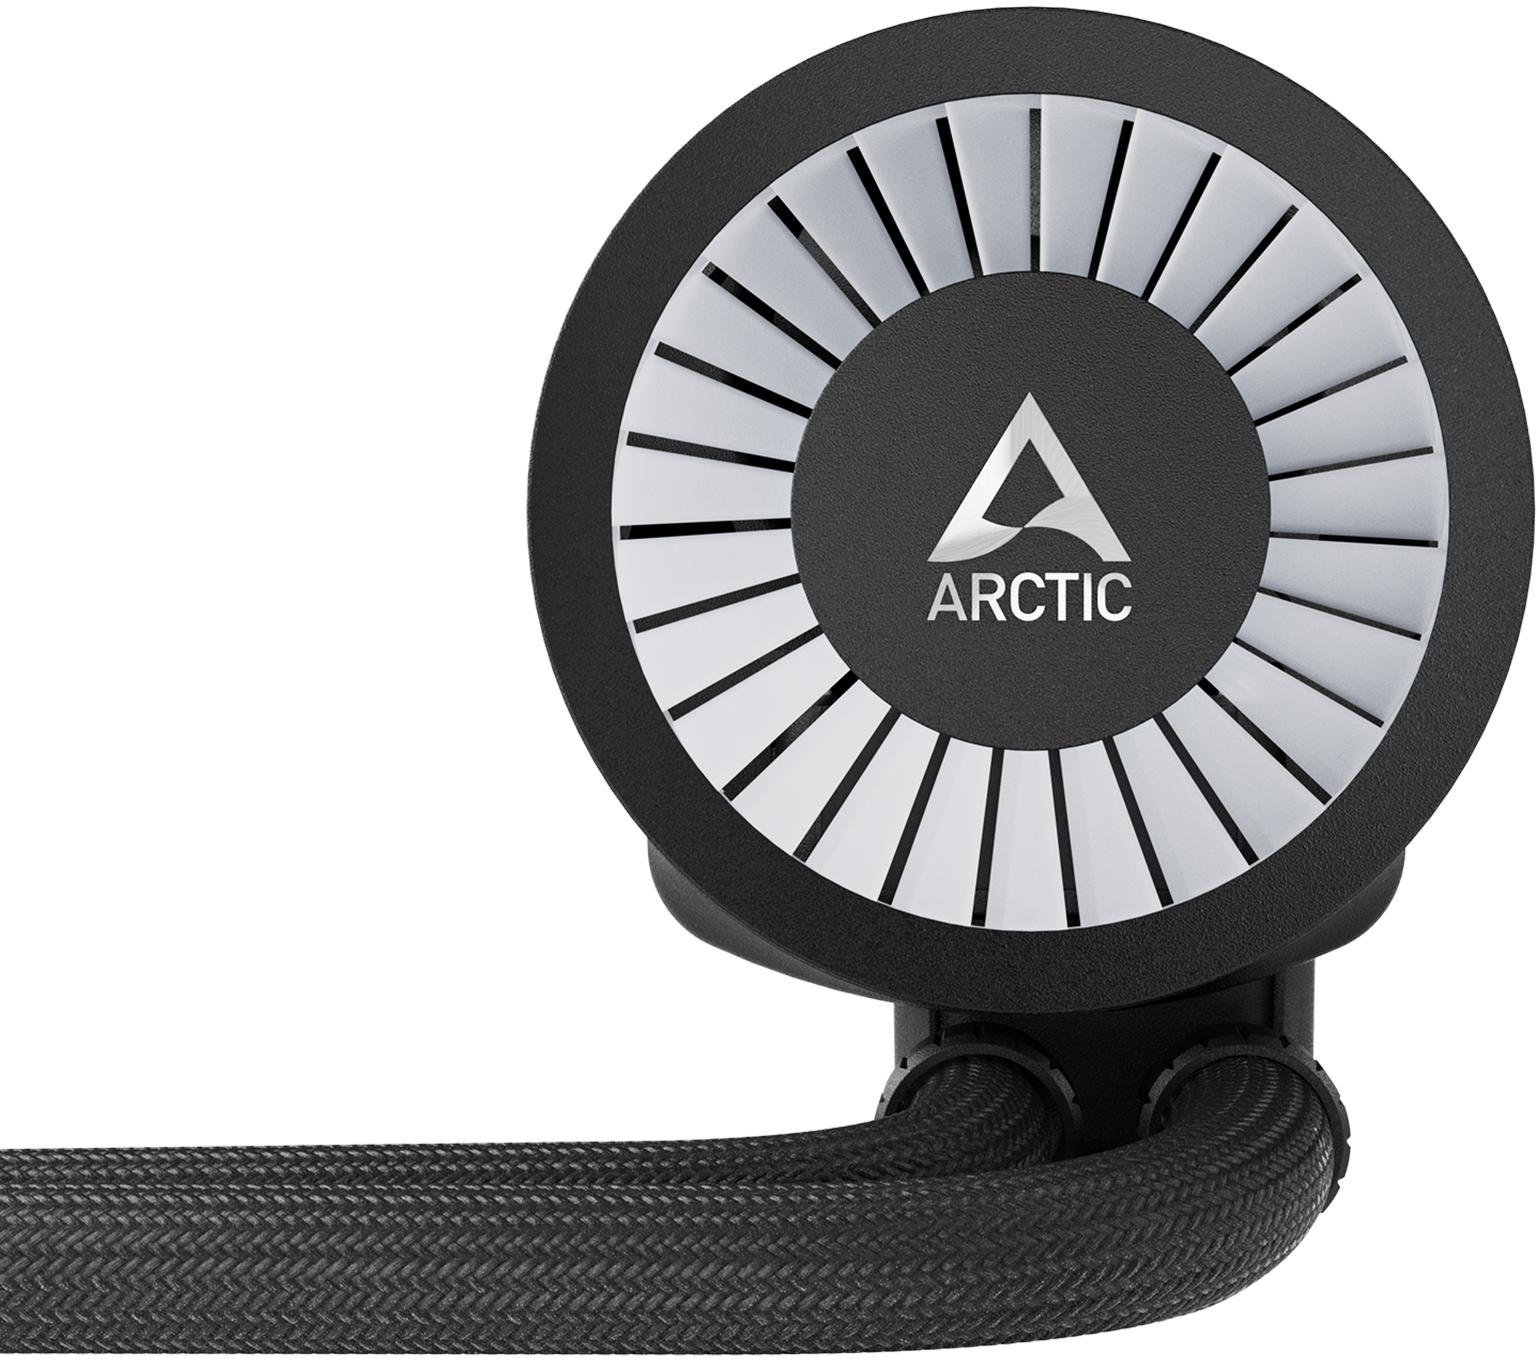 Arctic - Water Cooler CPU AIO Arctic Liquid Freezer III ARGB - 240mm